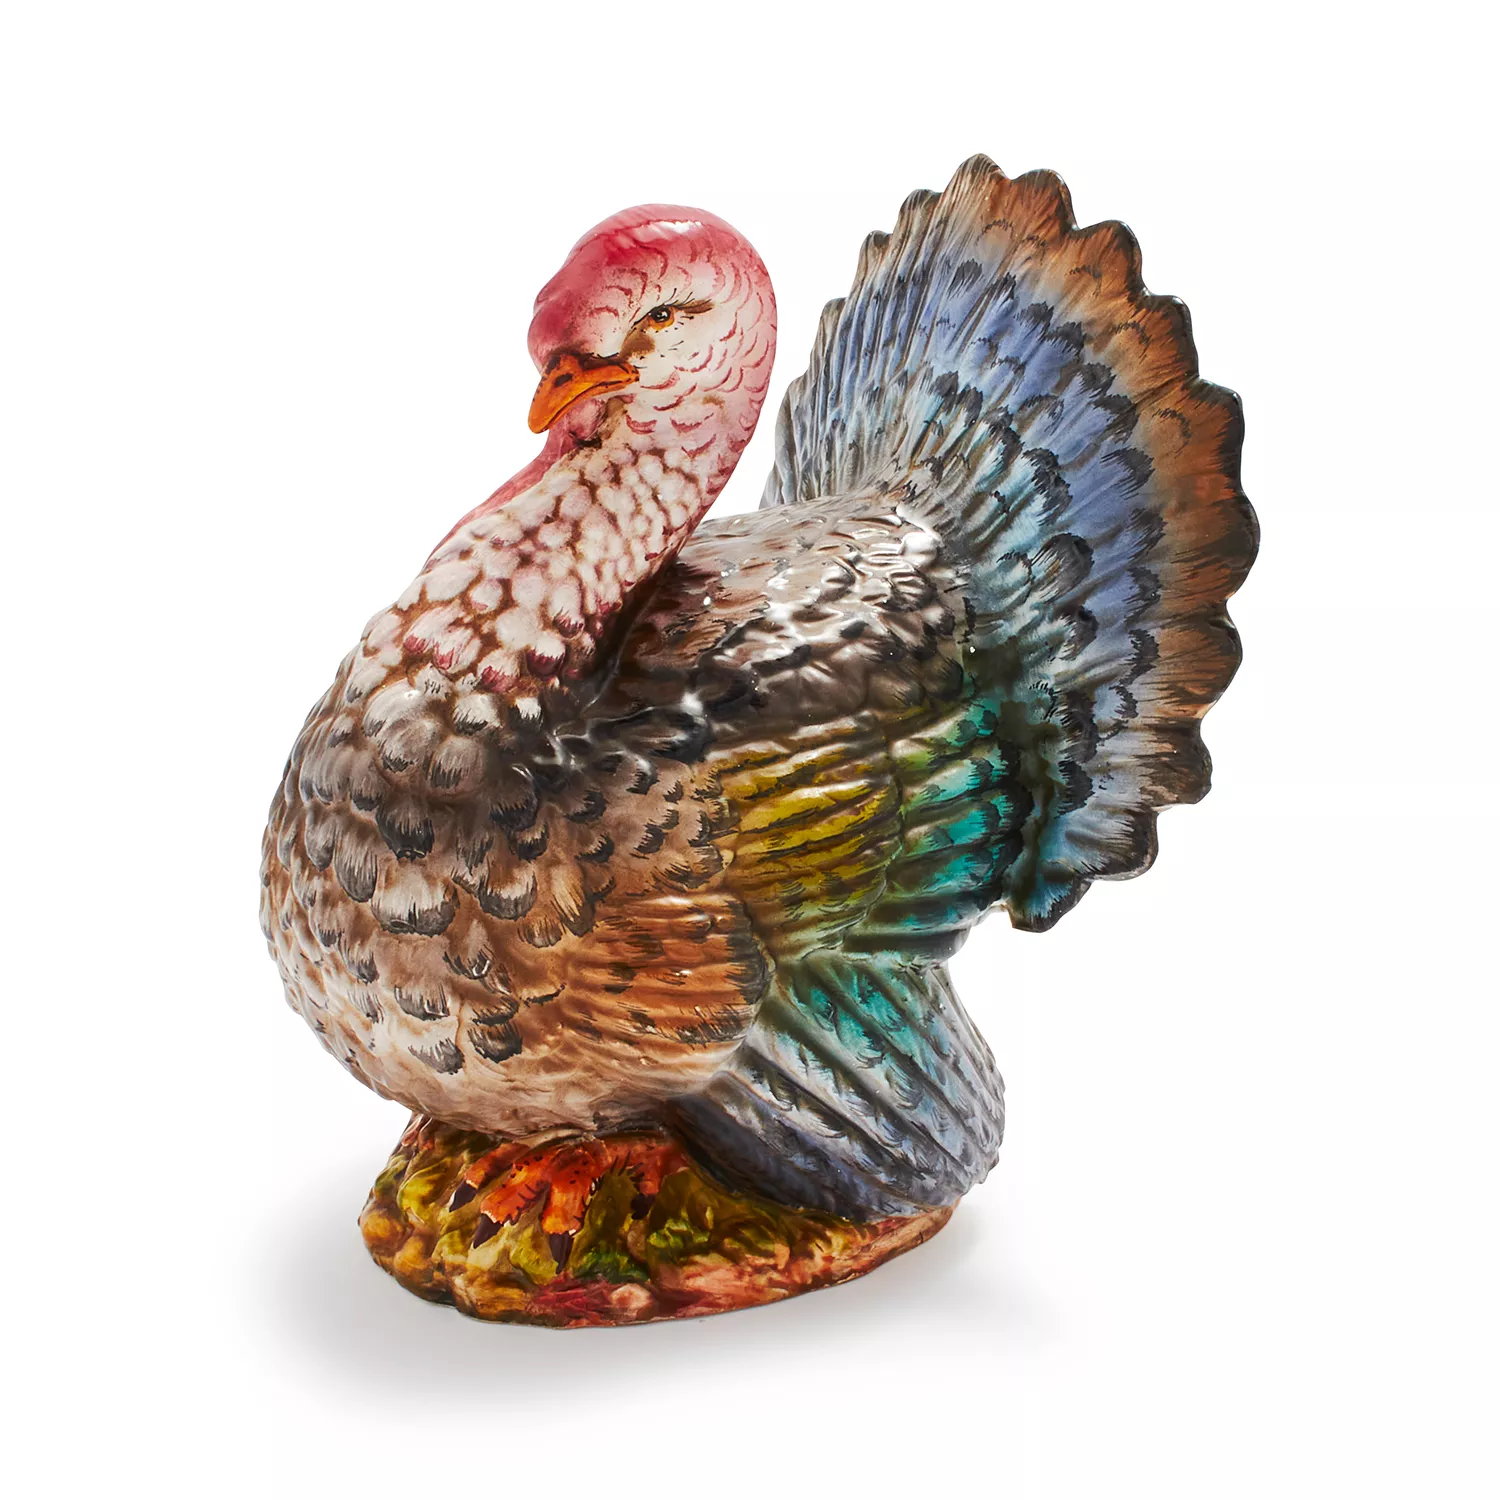 Sur La Table Italian Hand-Painted Ceramic Turkey